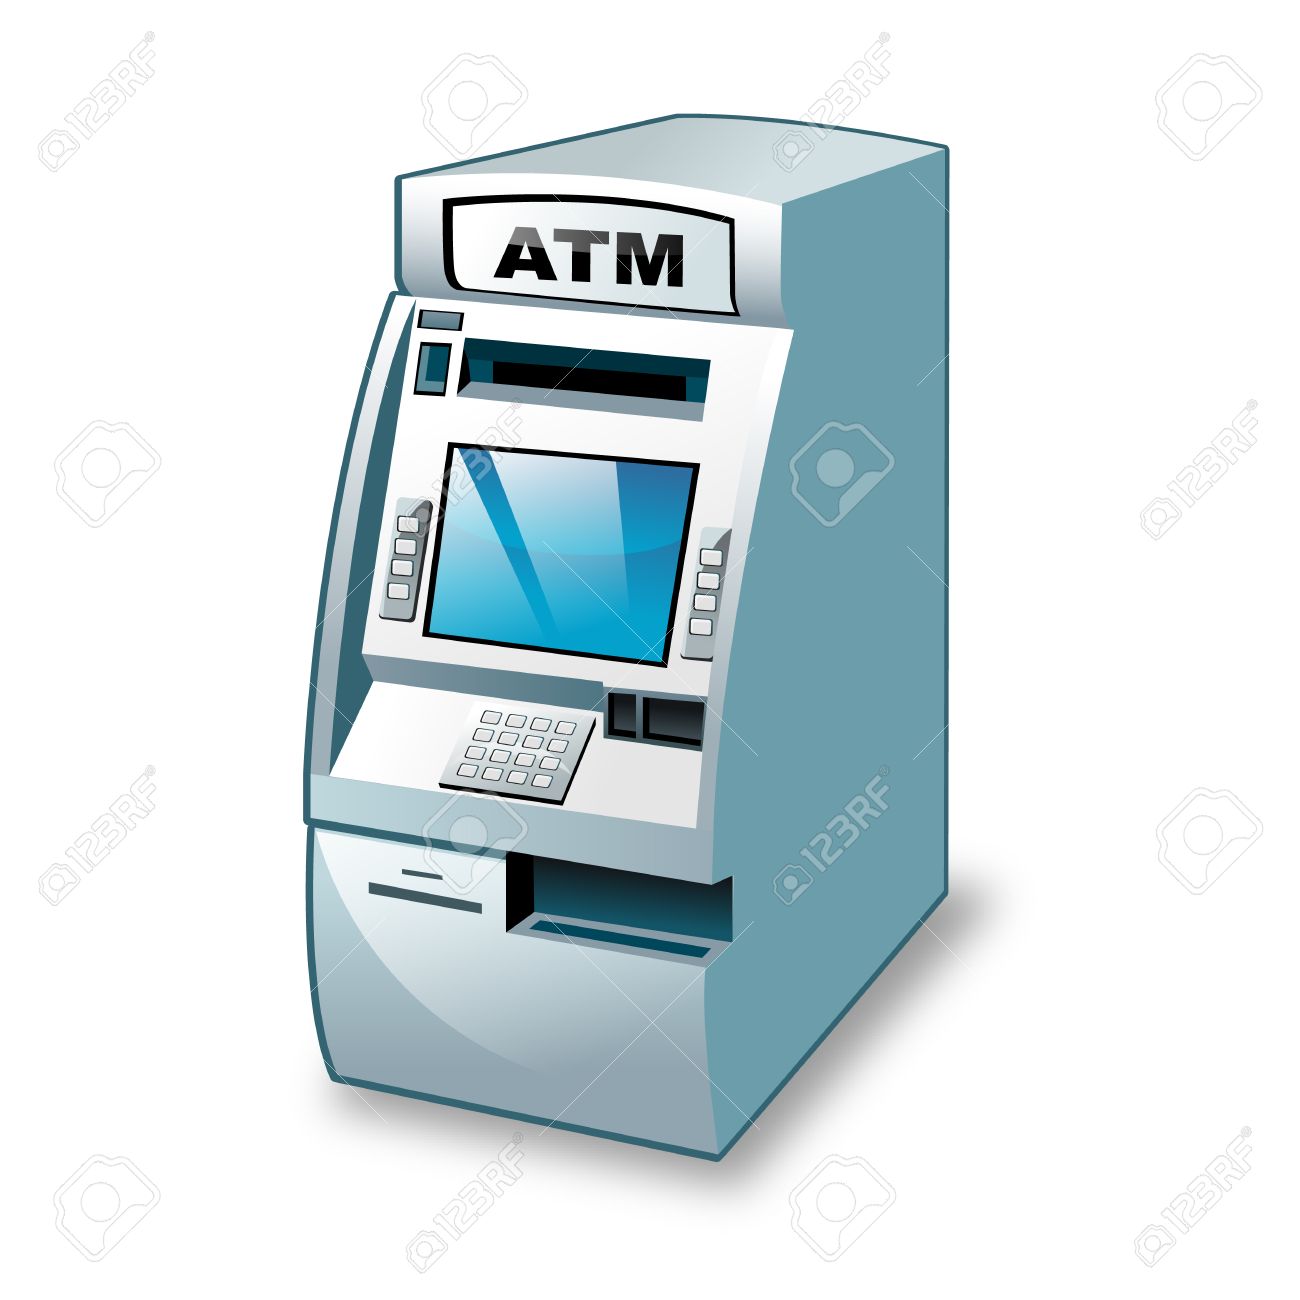 ATM in qatar